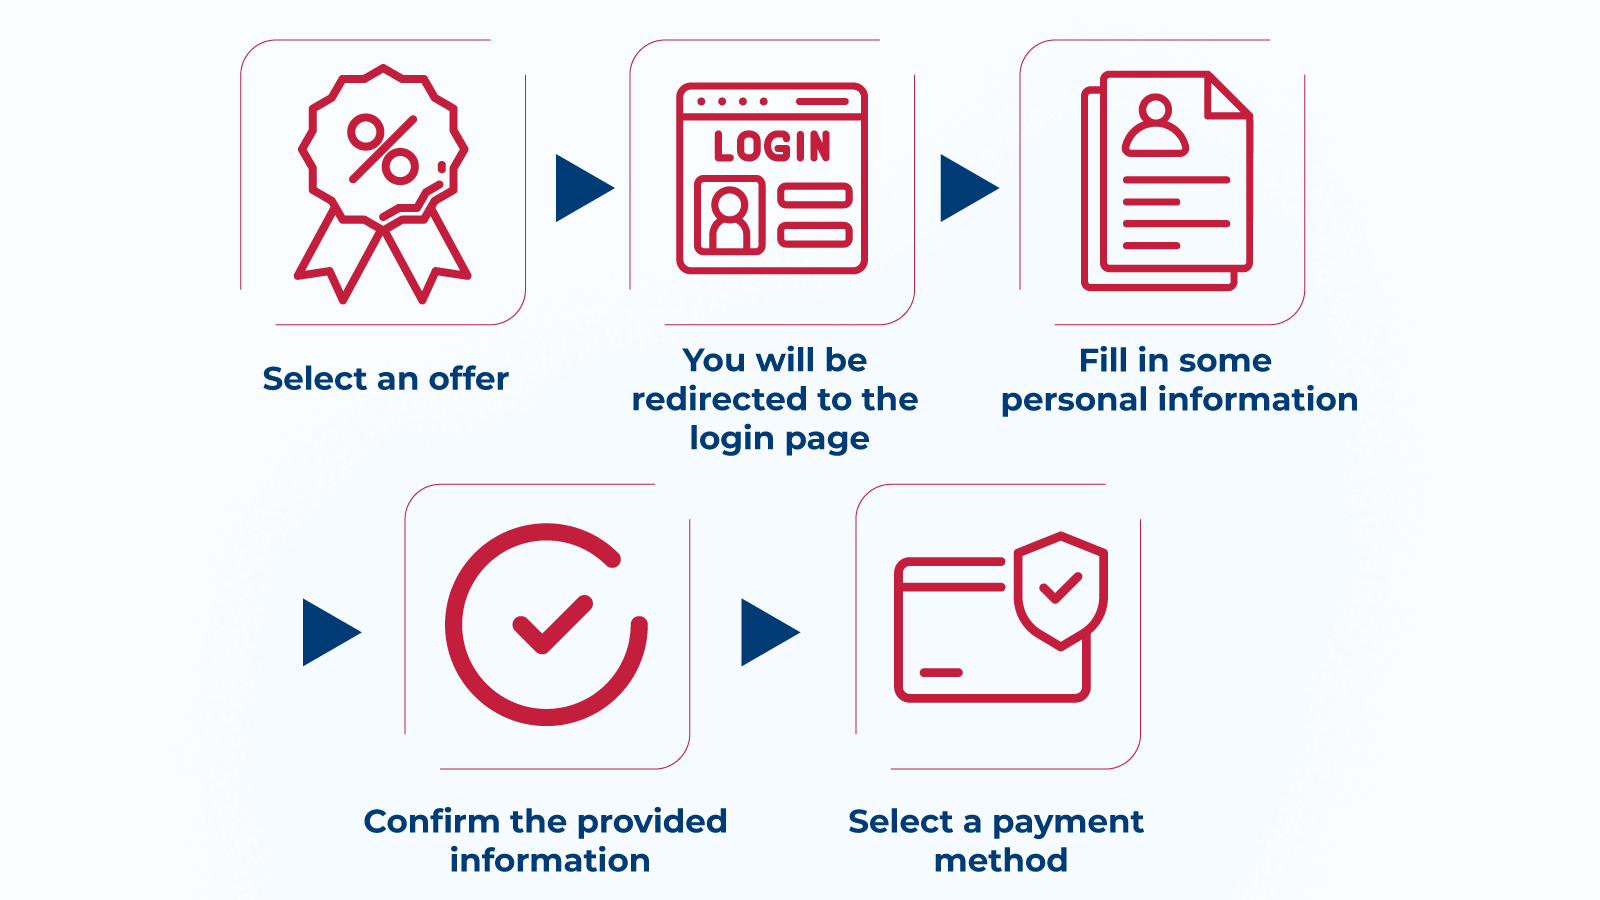 How to claim a sign-up bonus